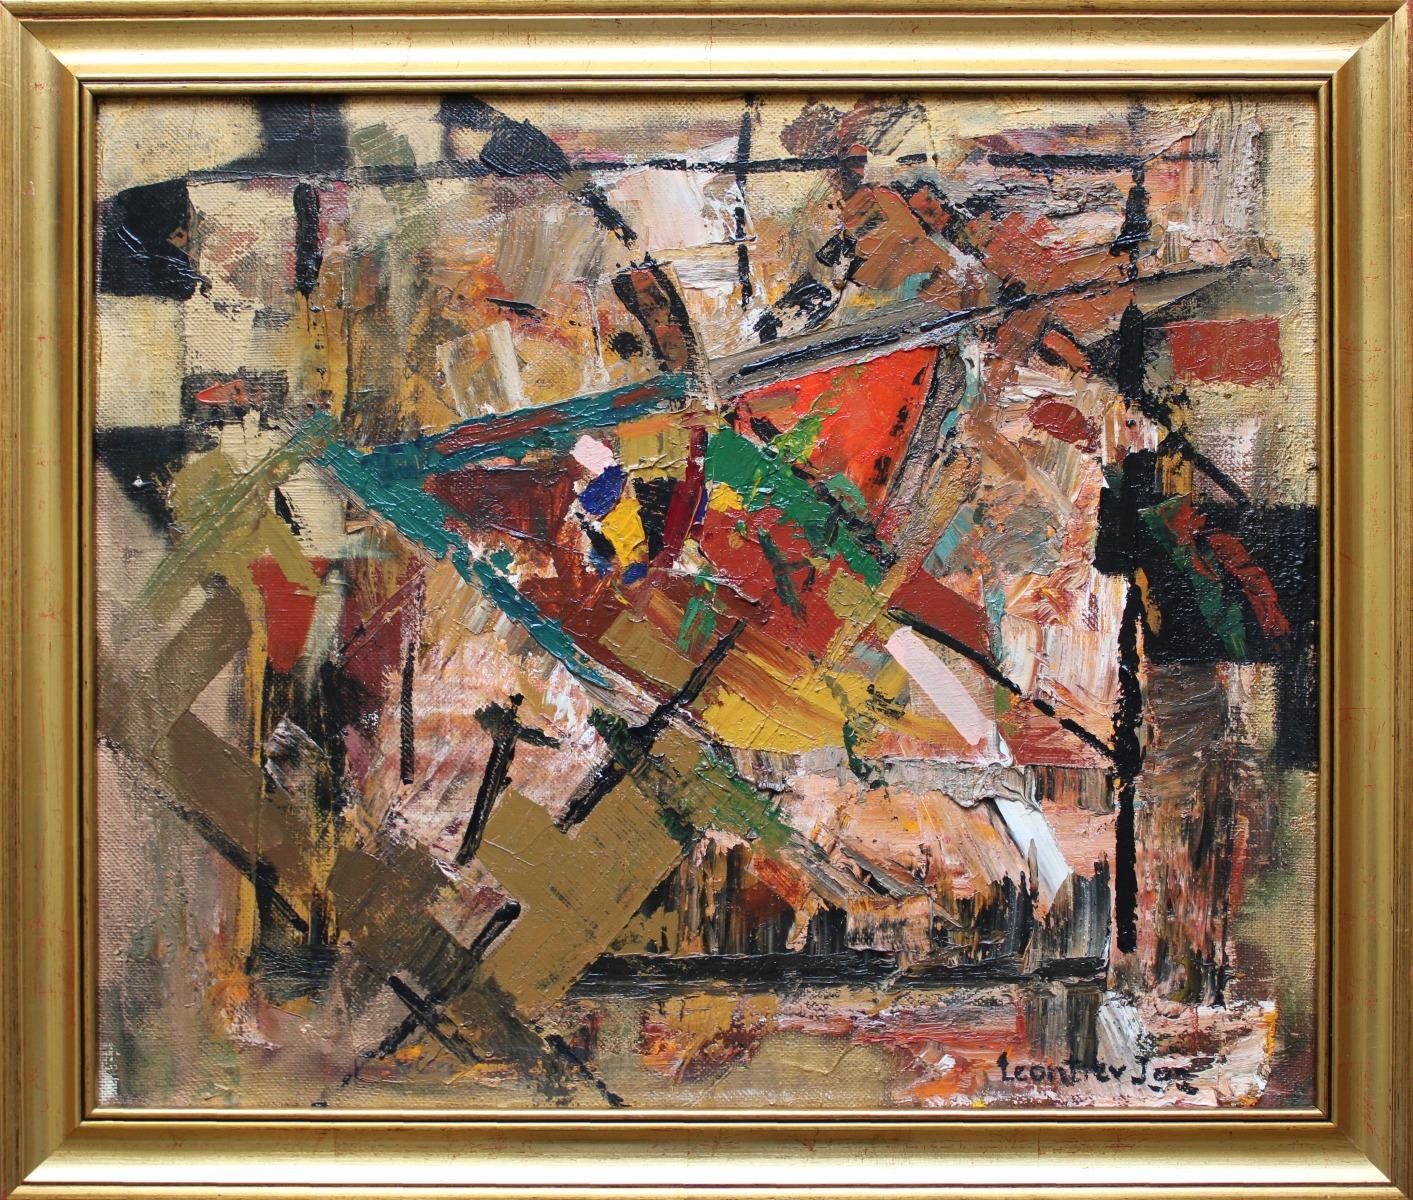 Zusammensetzung
1992., Leinwand, Öl, 50x60 cm
Abstrakte Zusammensetzung


